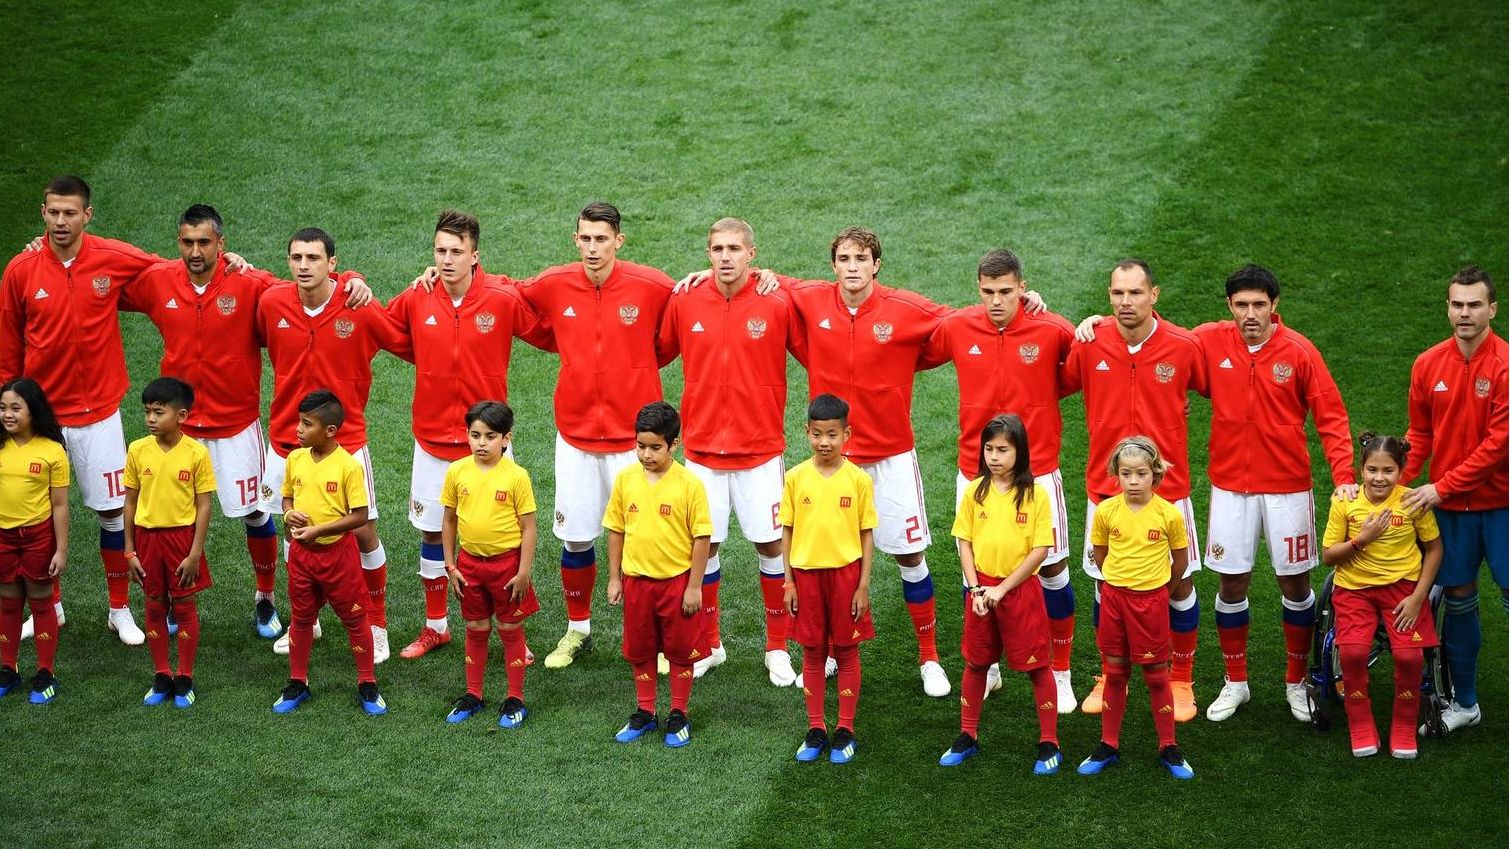 Сборная России перед стартовым матчем чемпионата мира по футболу 2018 года.